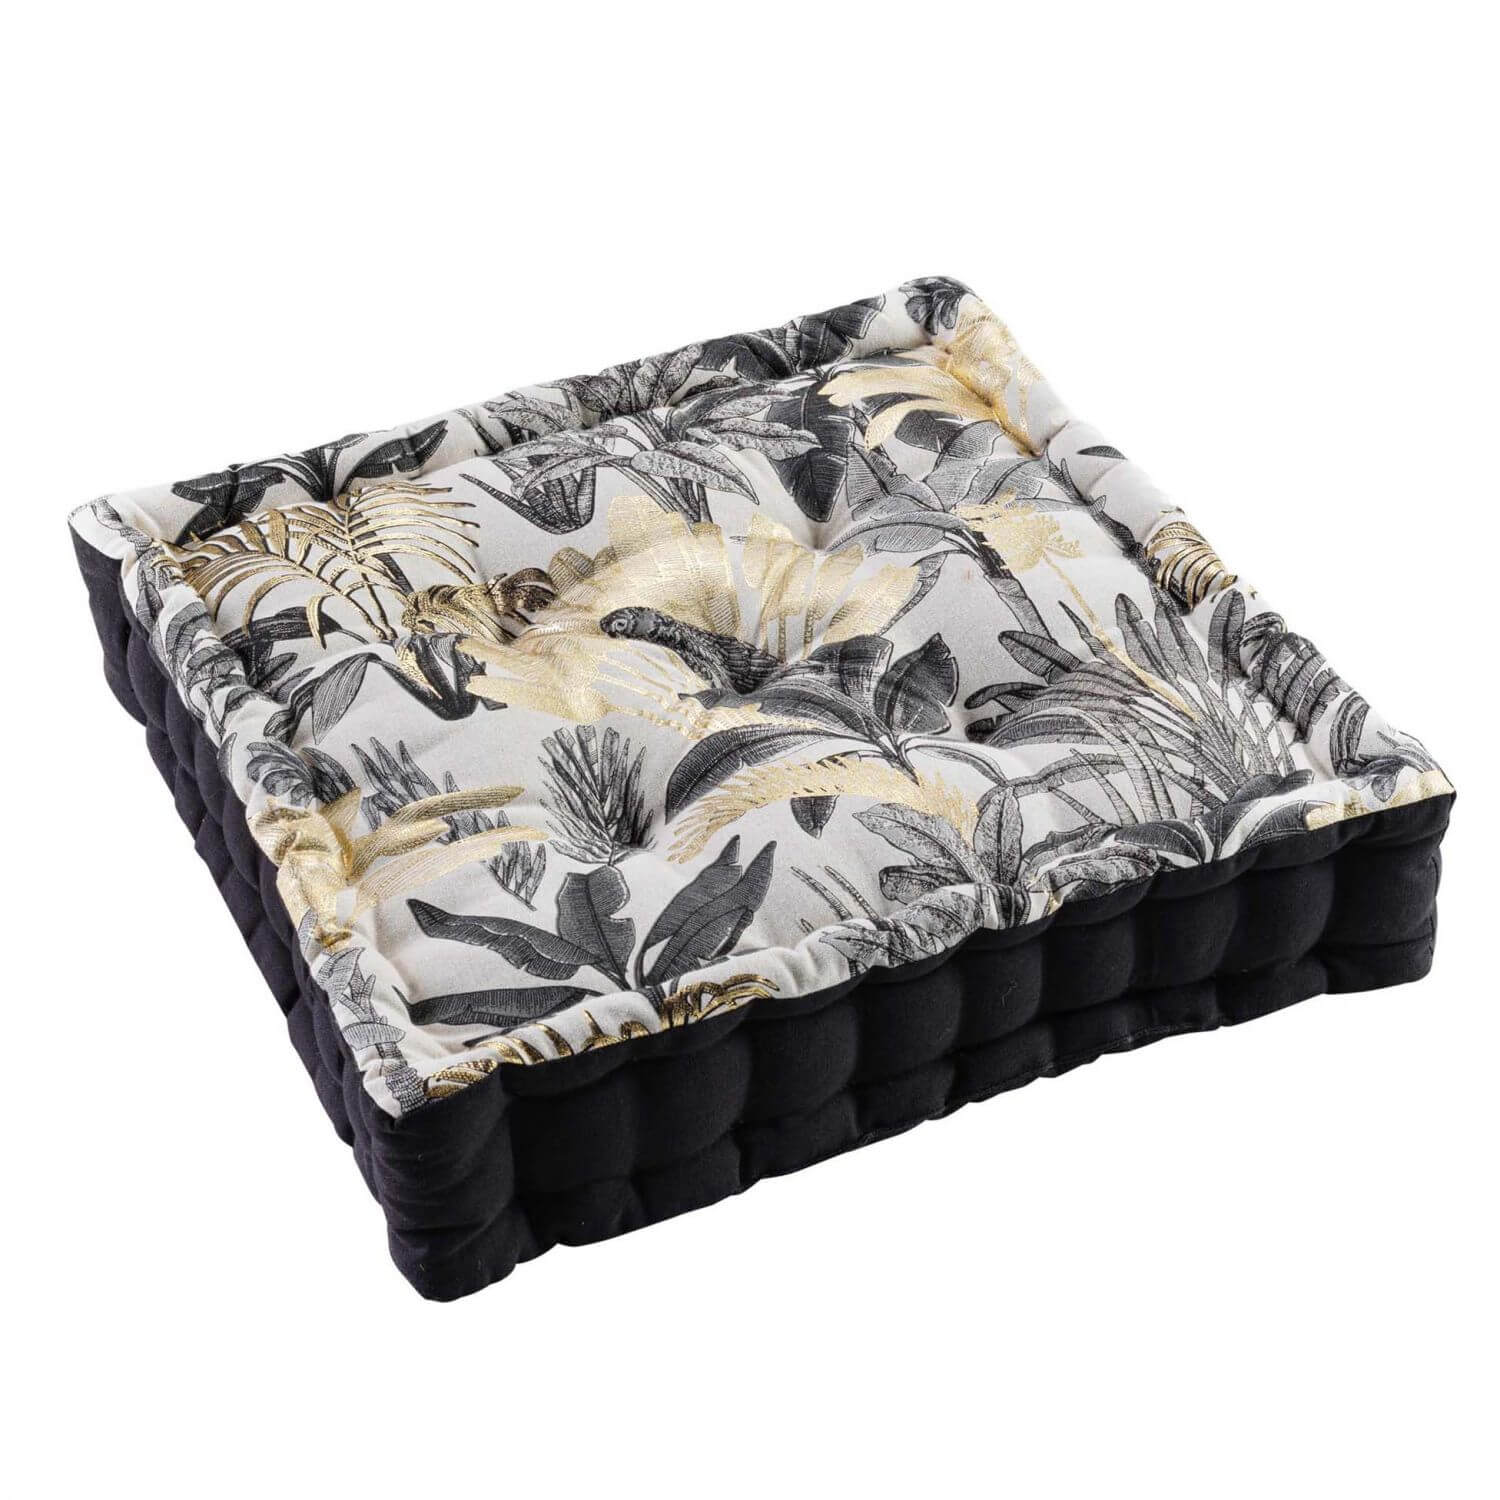 Coussin de sol garni - 45 x 45 cm x 10 cm - Palmiers et perroquets - noir et or métallisé